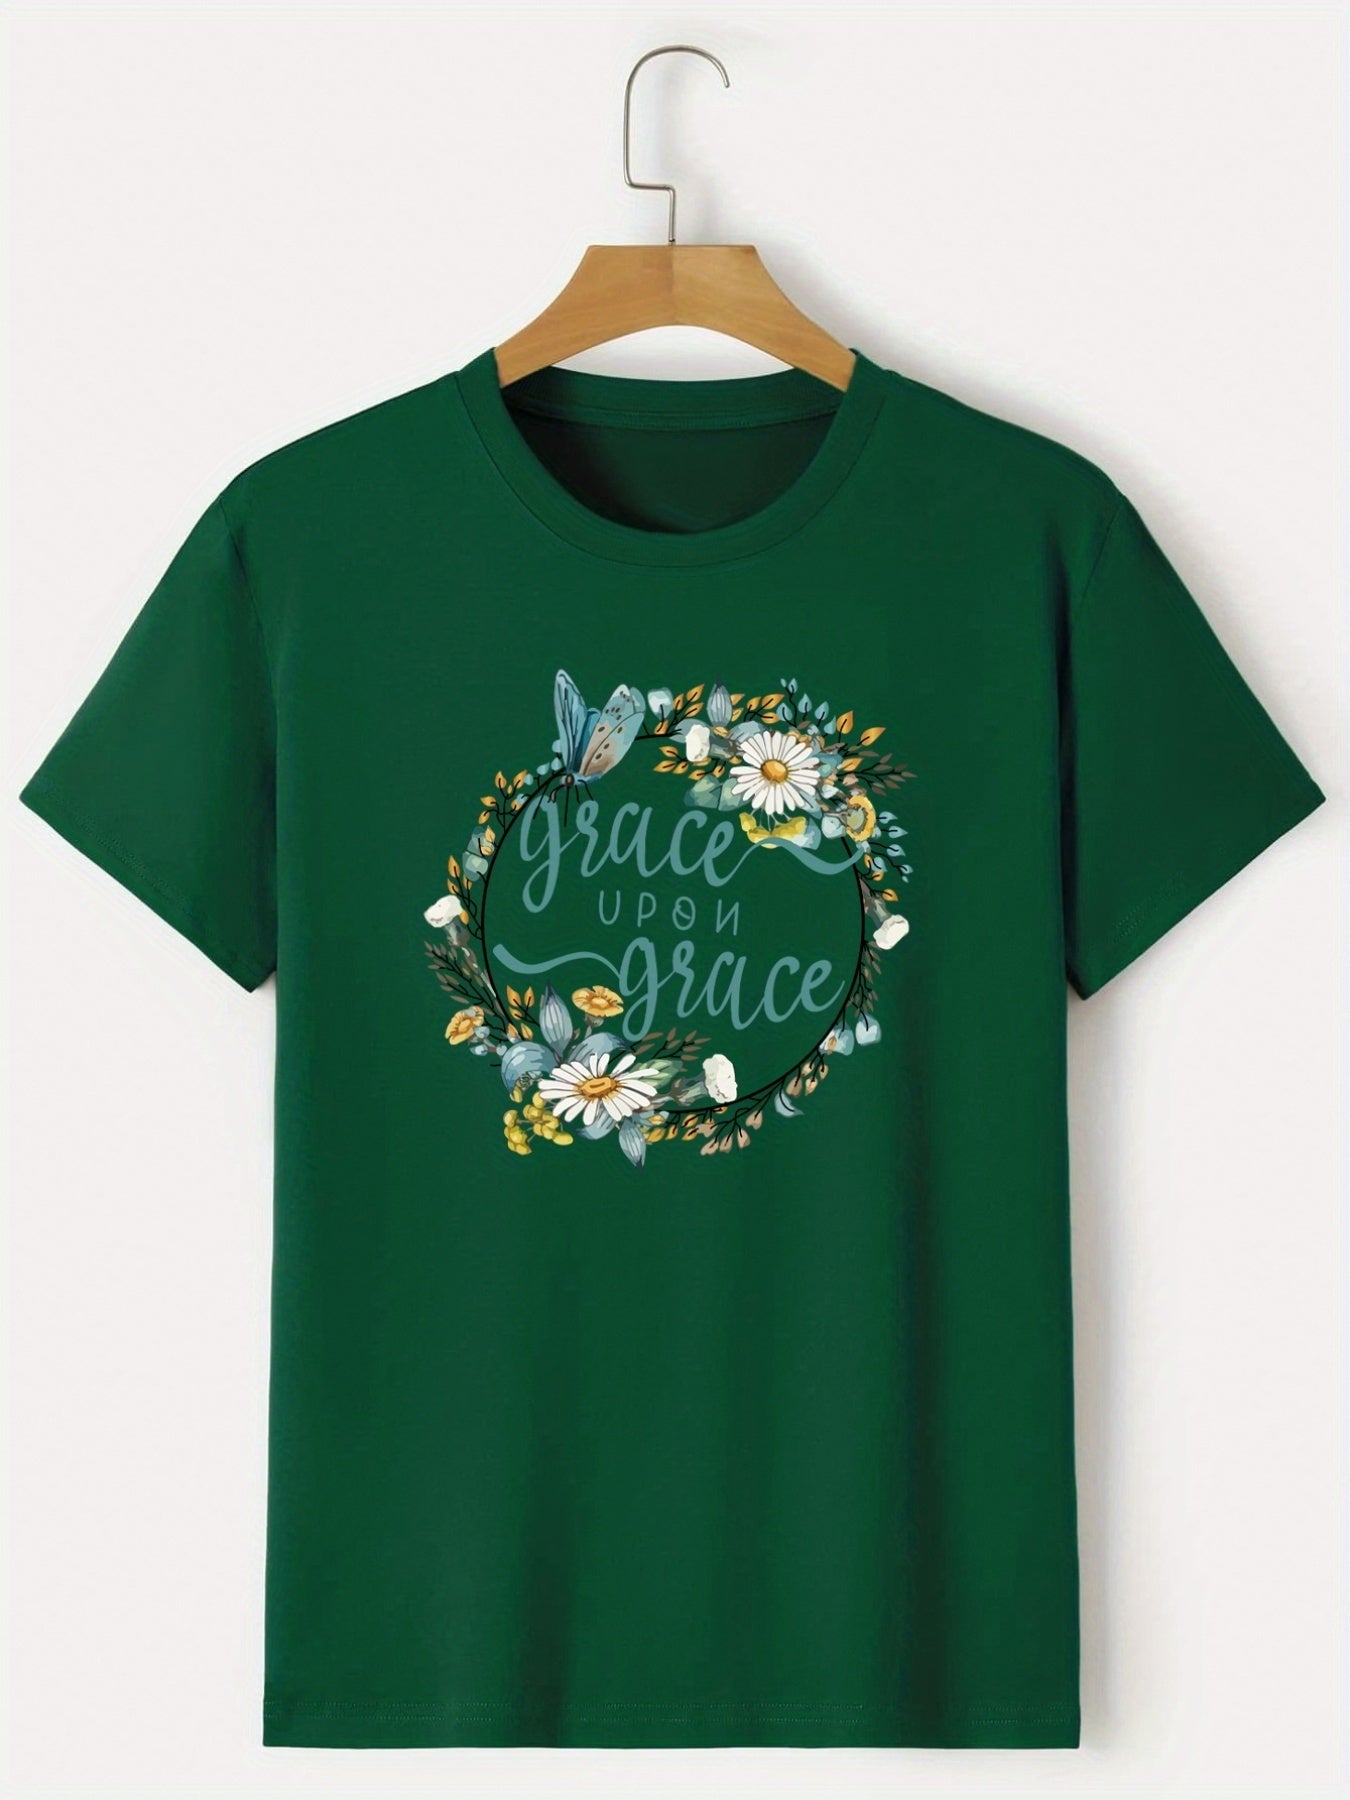 Grace Upon Grace Women's Christian T-shirt claimedbygoddesigns